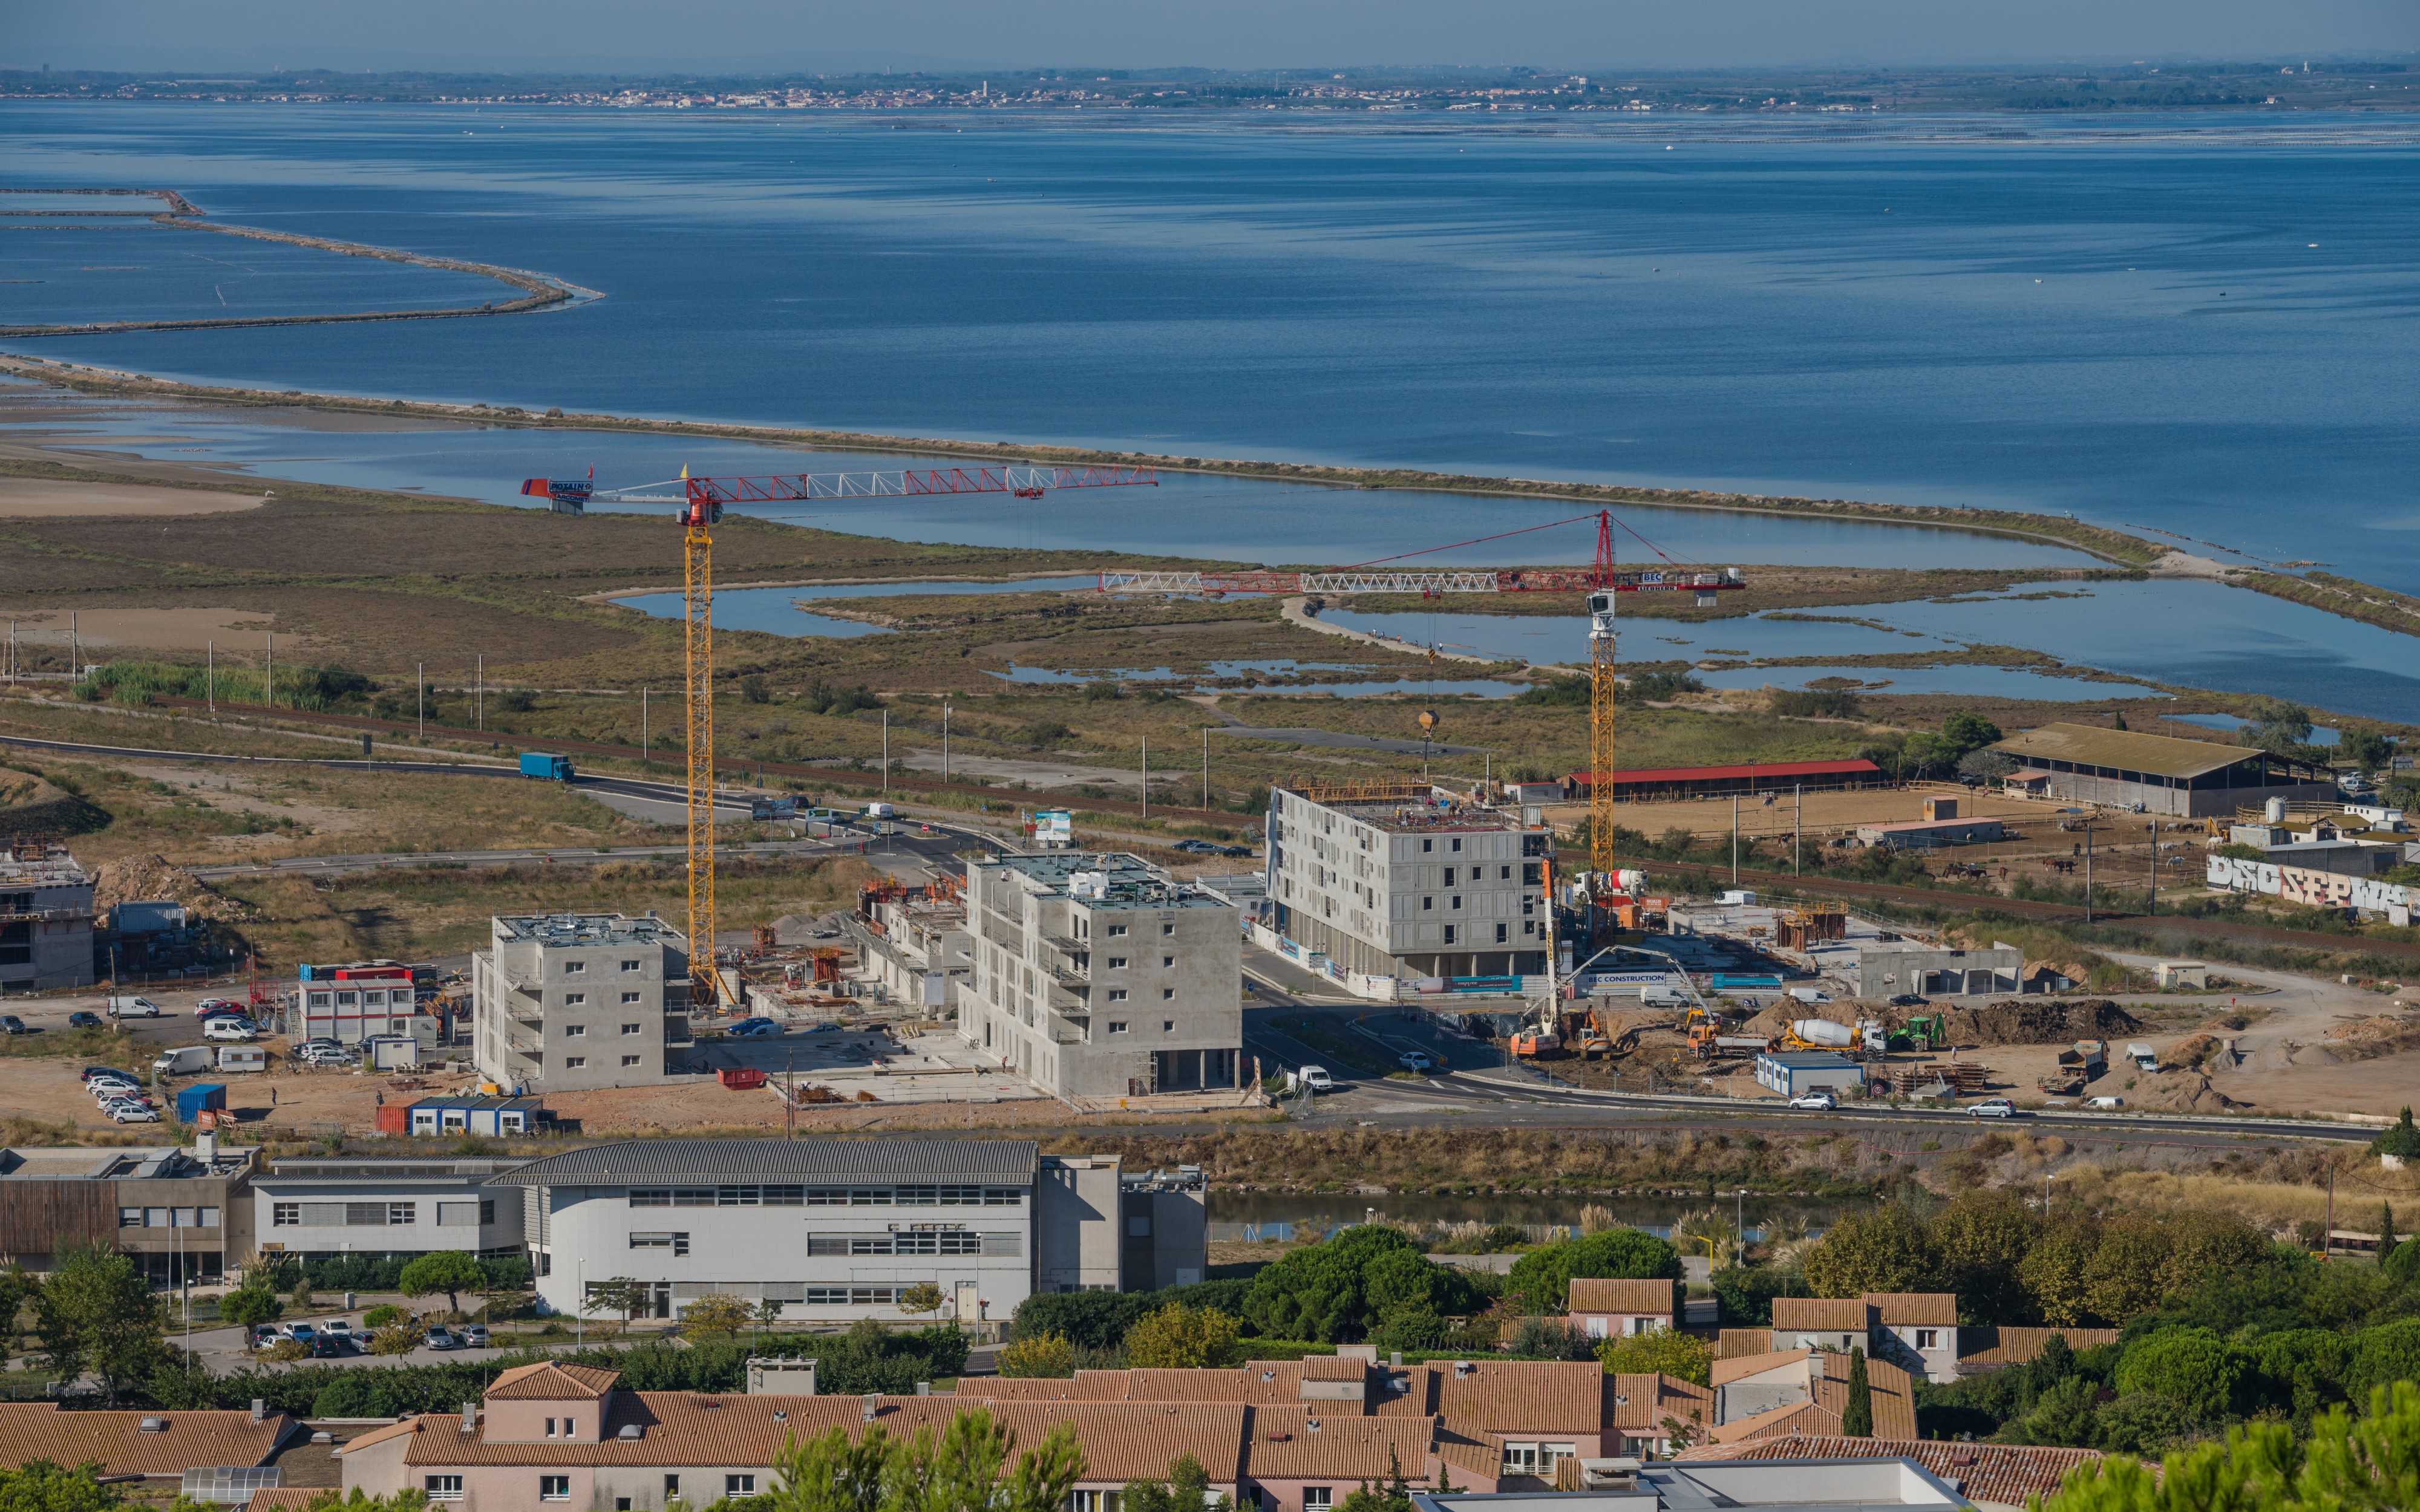 Construction in Sète, Hérault 01